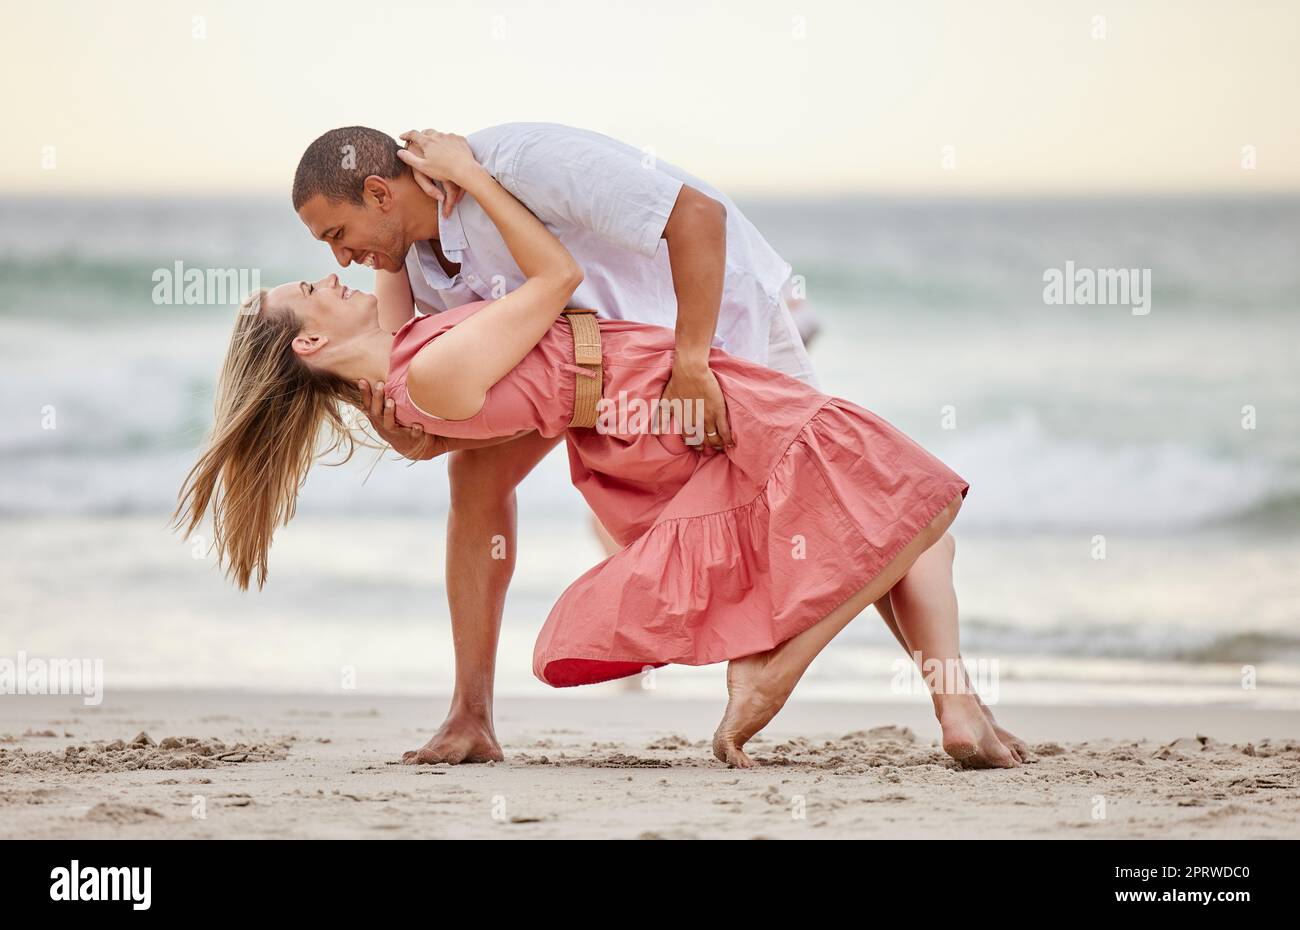 L'amore, la danza e la danza di coppia in spiaggia in estate celebrano il loro matrimonio, la felicità e la luna di miele. Sorriso, tramonto e donna felice che festeggia un sano rapporto con il partner in mare Foto Stock